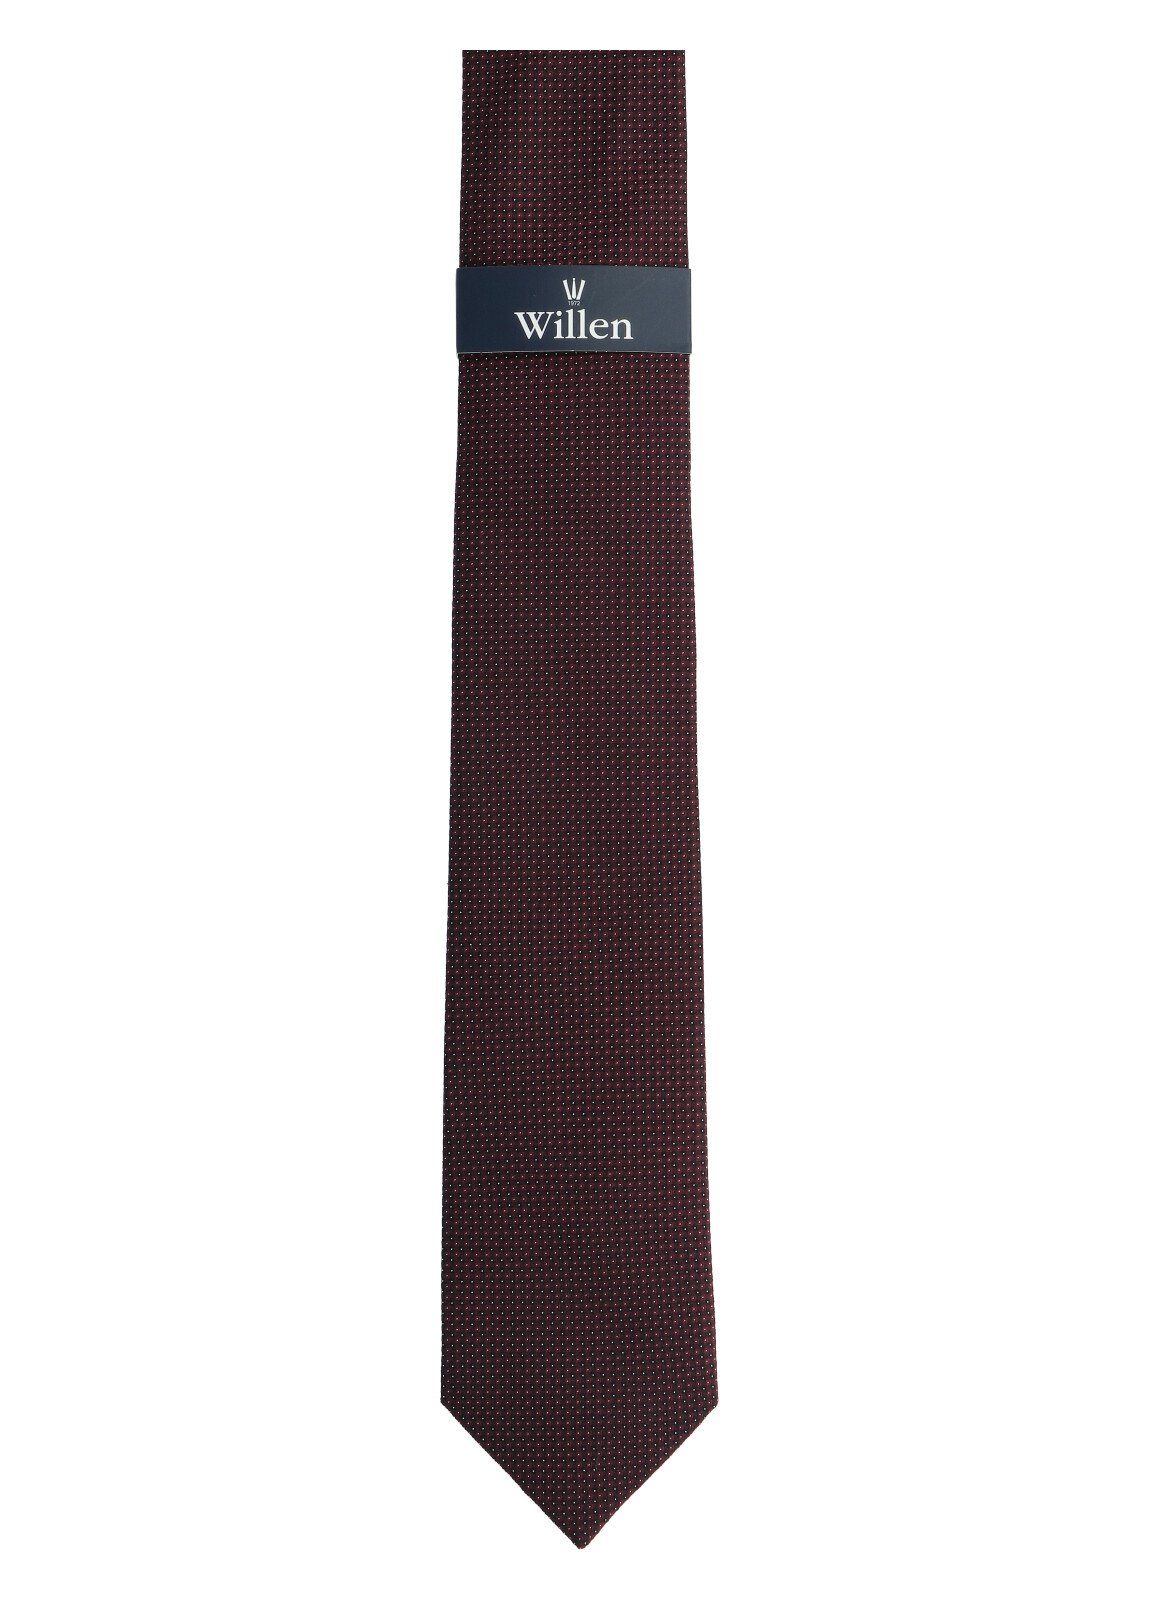 WILLEN Willen braun Krawatte Krawatte